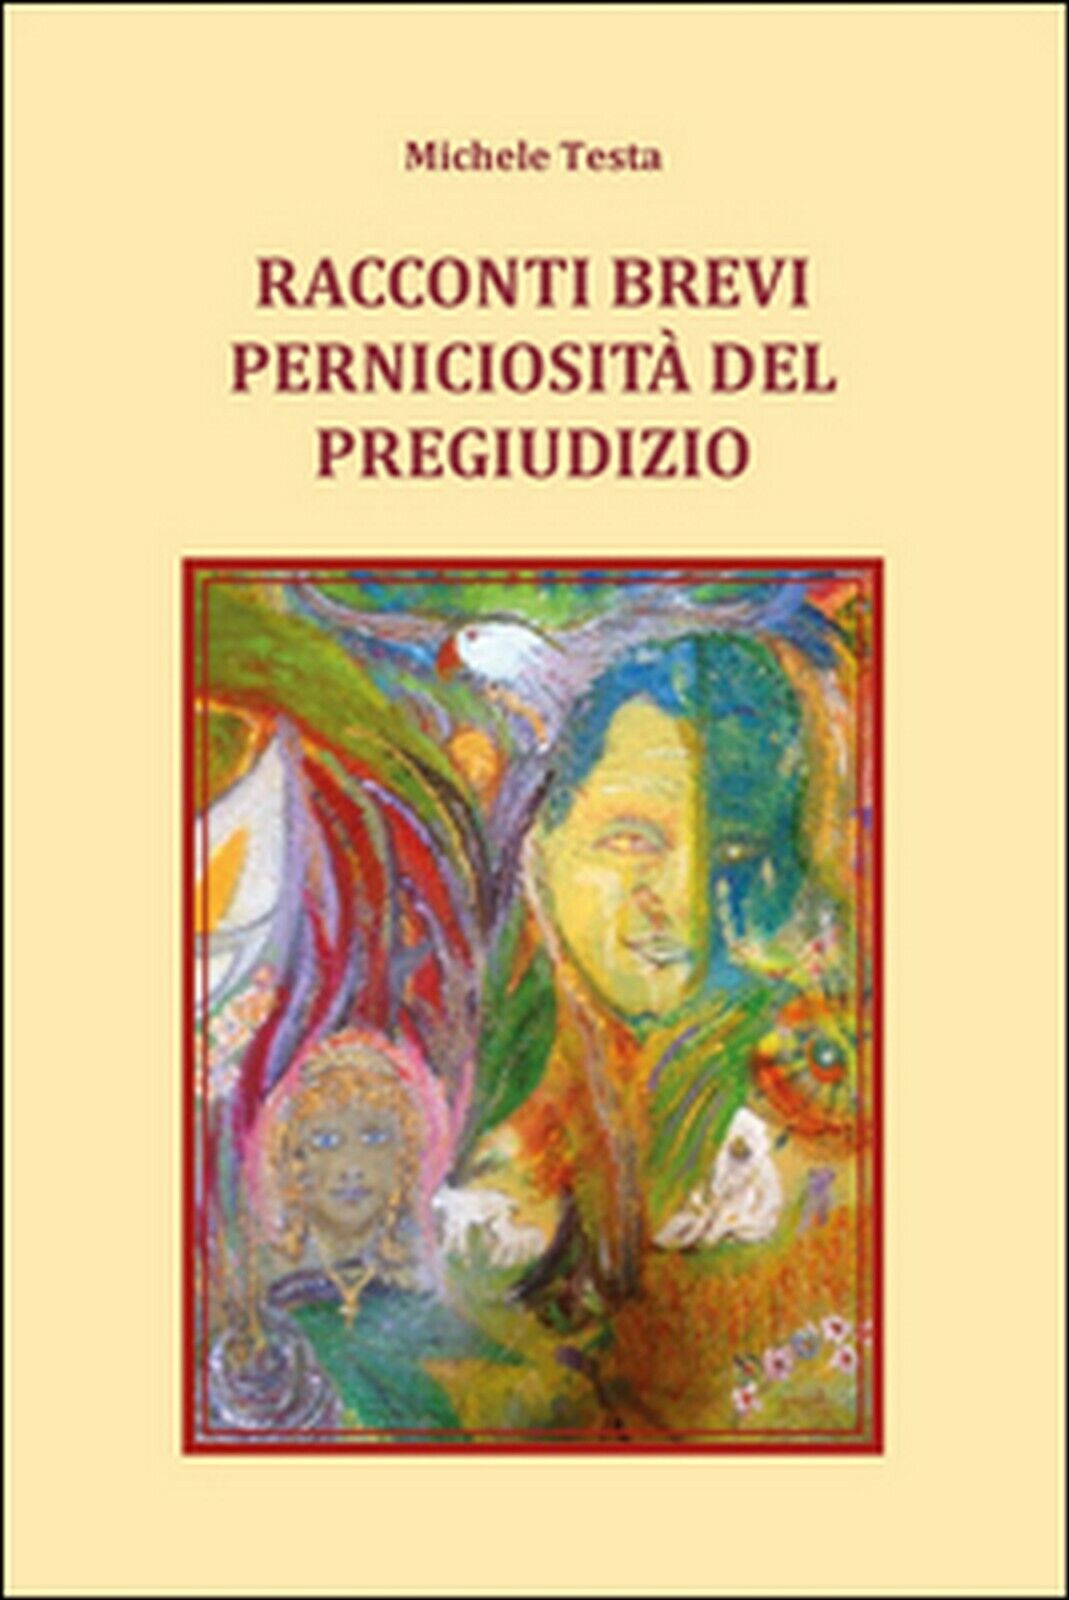 Racconti brevi - Perniciosit? del pregiudizio, Michele Testa,  2015,  Youcanpr.